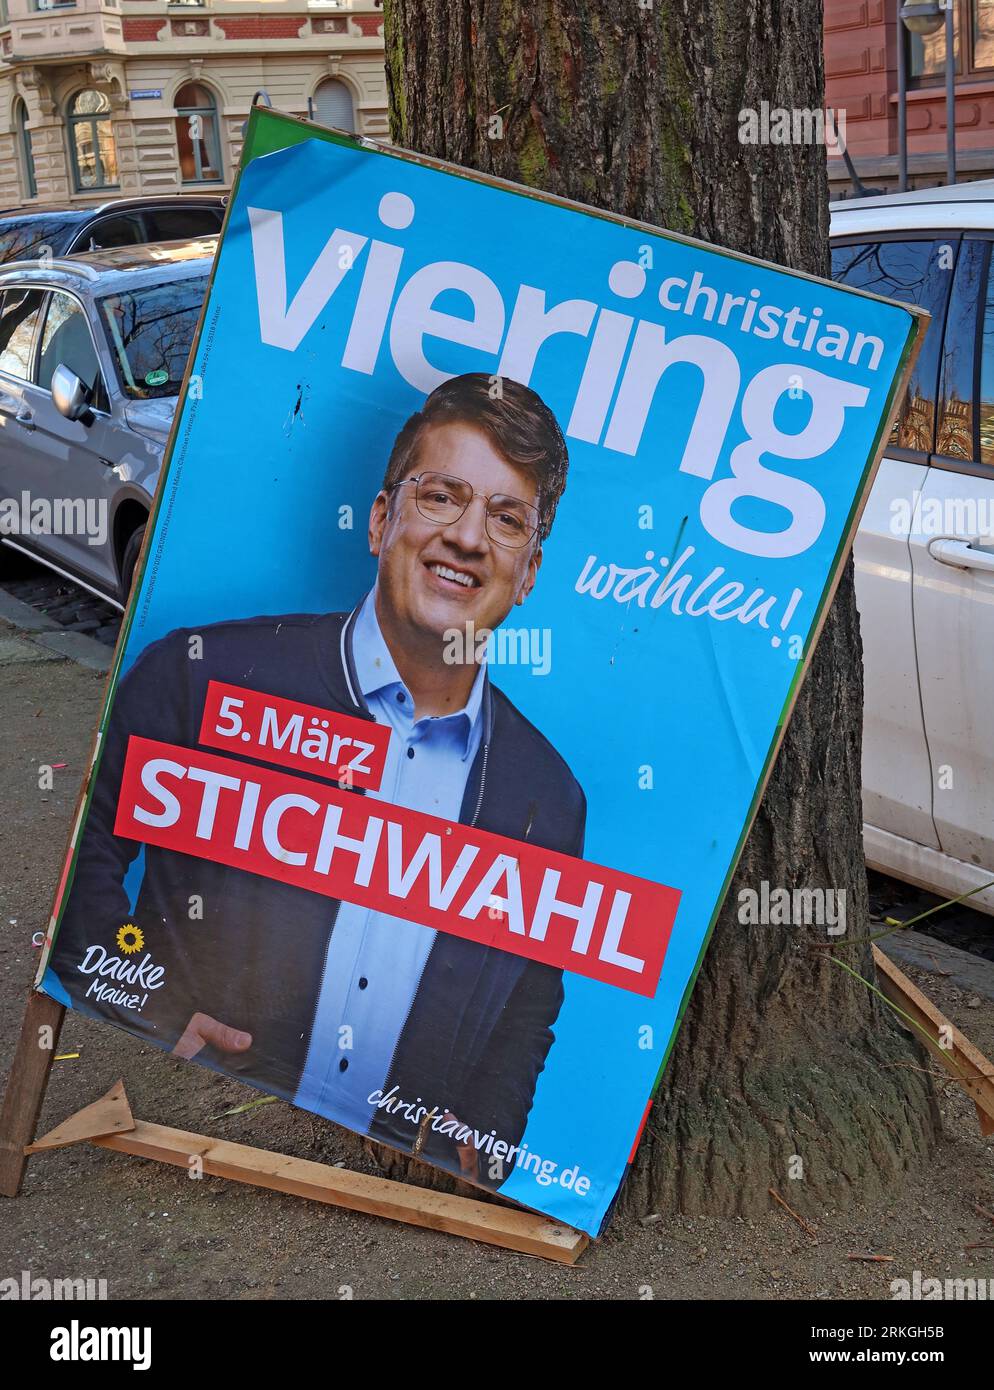 Christian Viering Mainz politicien de la ville, affiche de deuxième tour du candidat politique vert - Mombacher Strasse. 61, 55122 Mayence, Rhénanie-Palatinat, Allemagne Banque D'Images